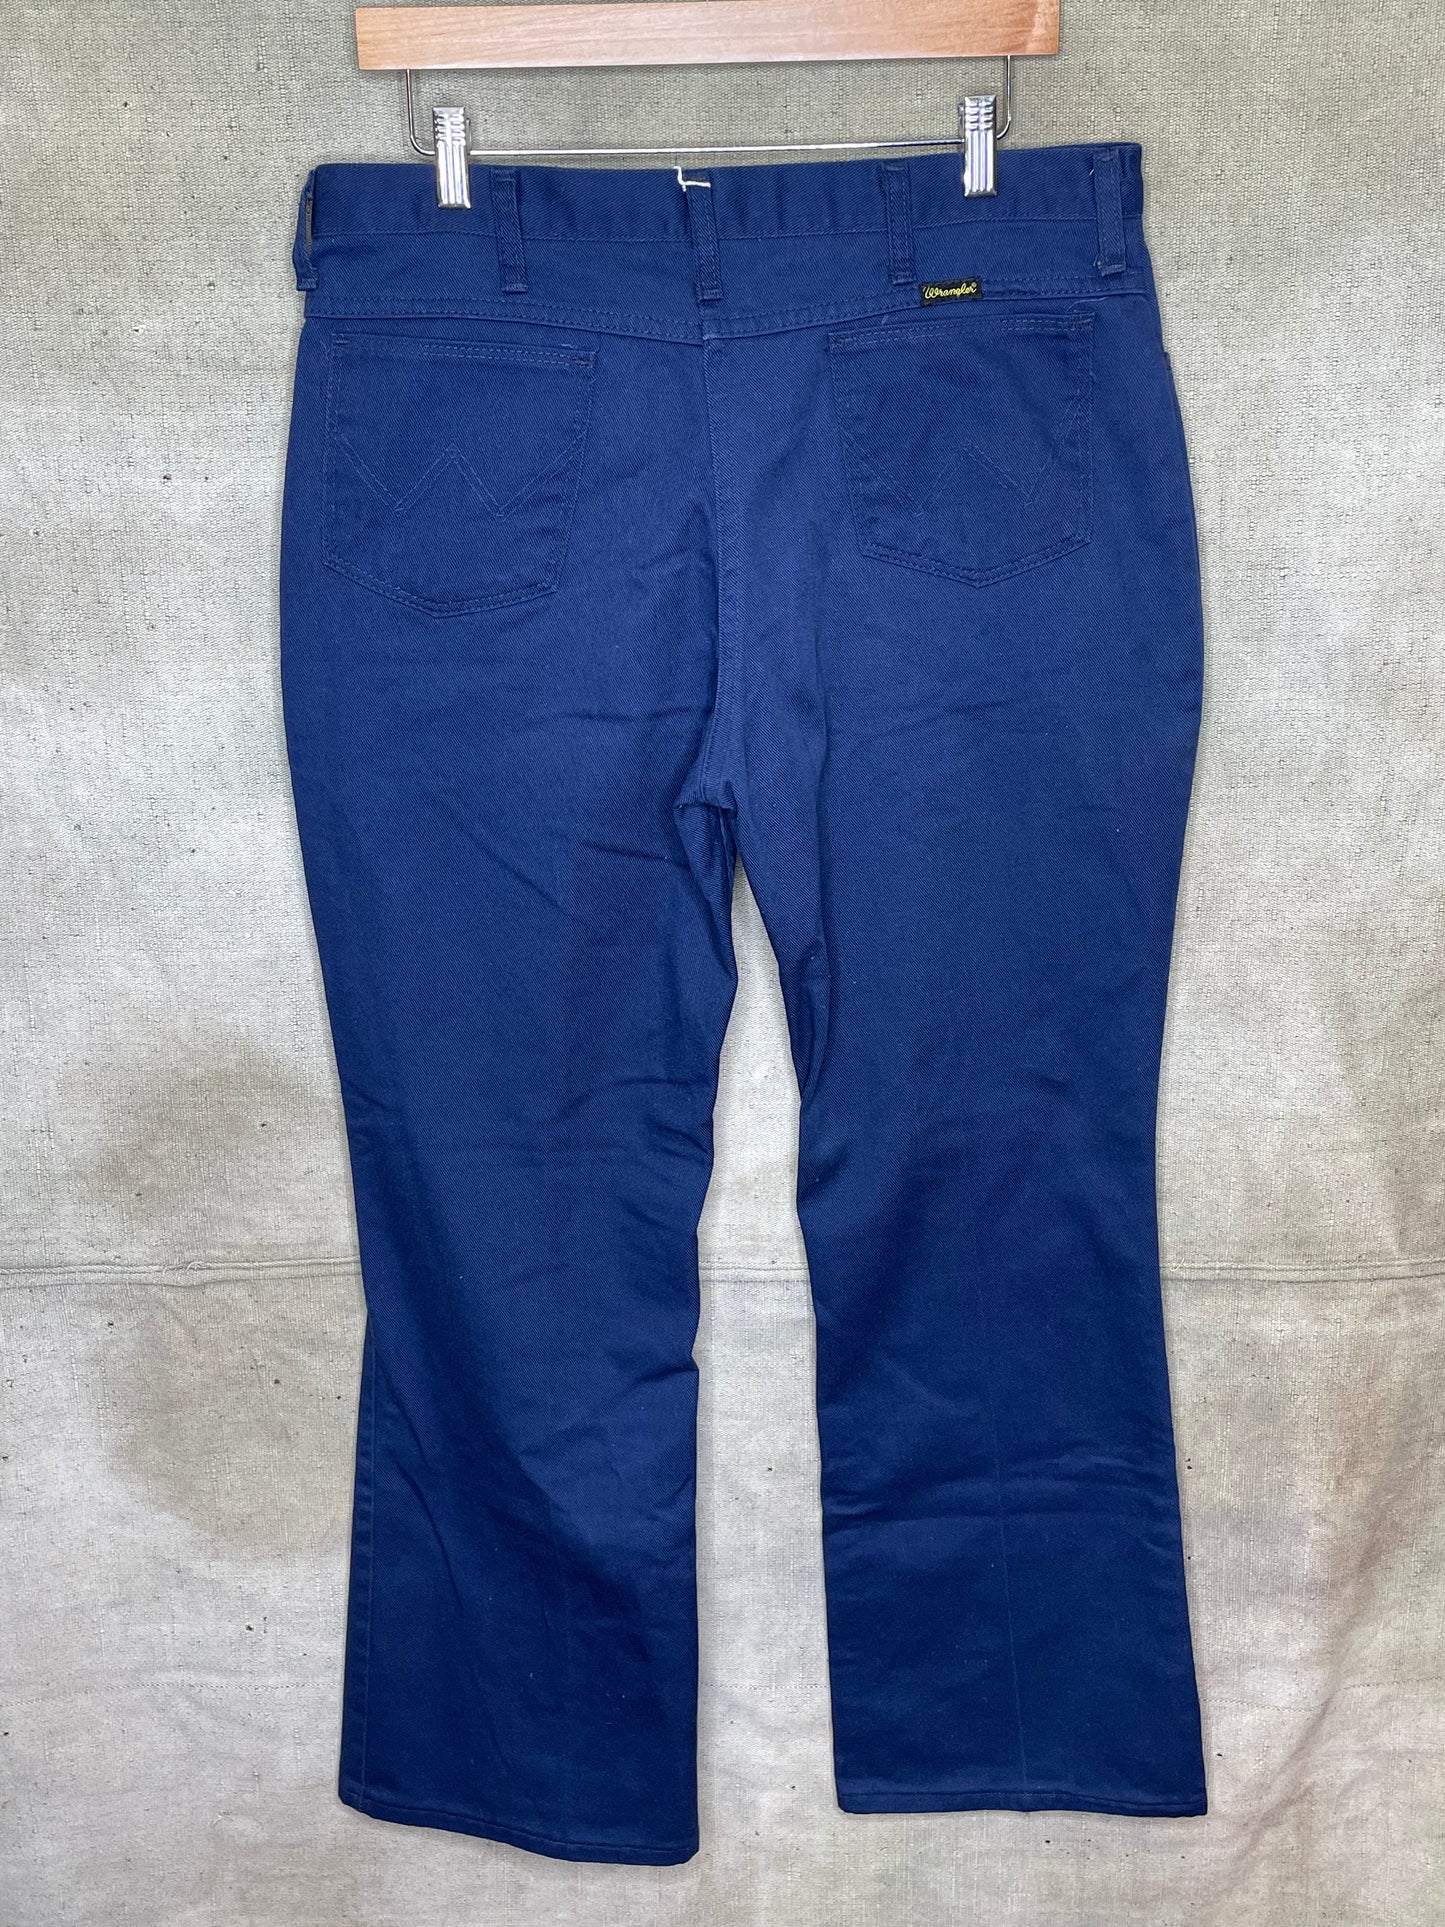 Vintage 80s Wrangler Dark Blue Pants W34 L30